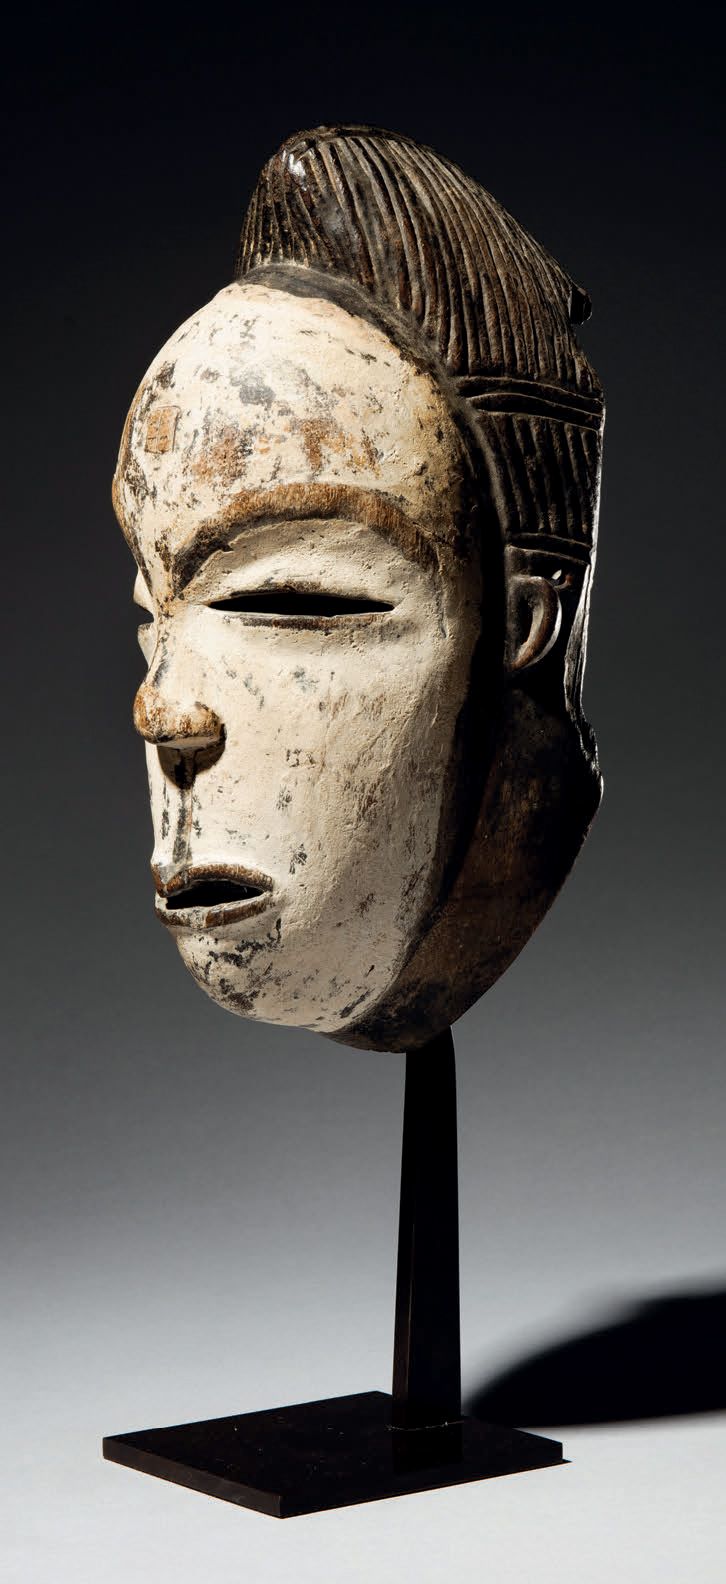 Null - 恩泽比面具，加蓬
木头
H.28厘米
非常古老的面具，显示了一个用高岭土覆盖的脸，具有恩泽比人的特征，恩泽比人是一个与普努人有关的小民族，其作品在&hellip;